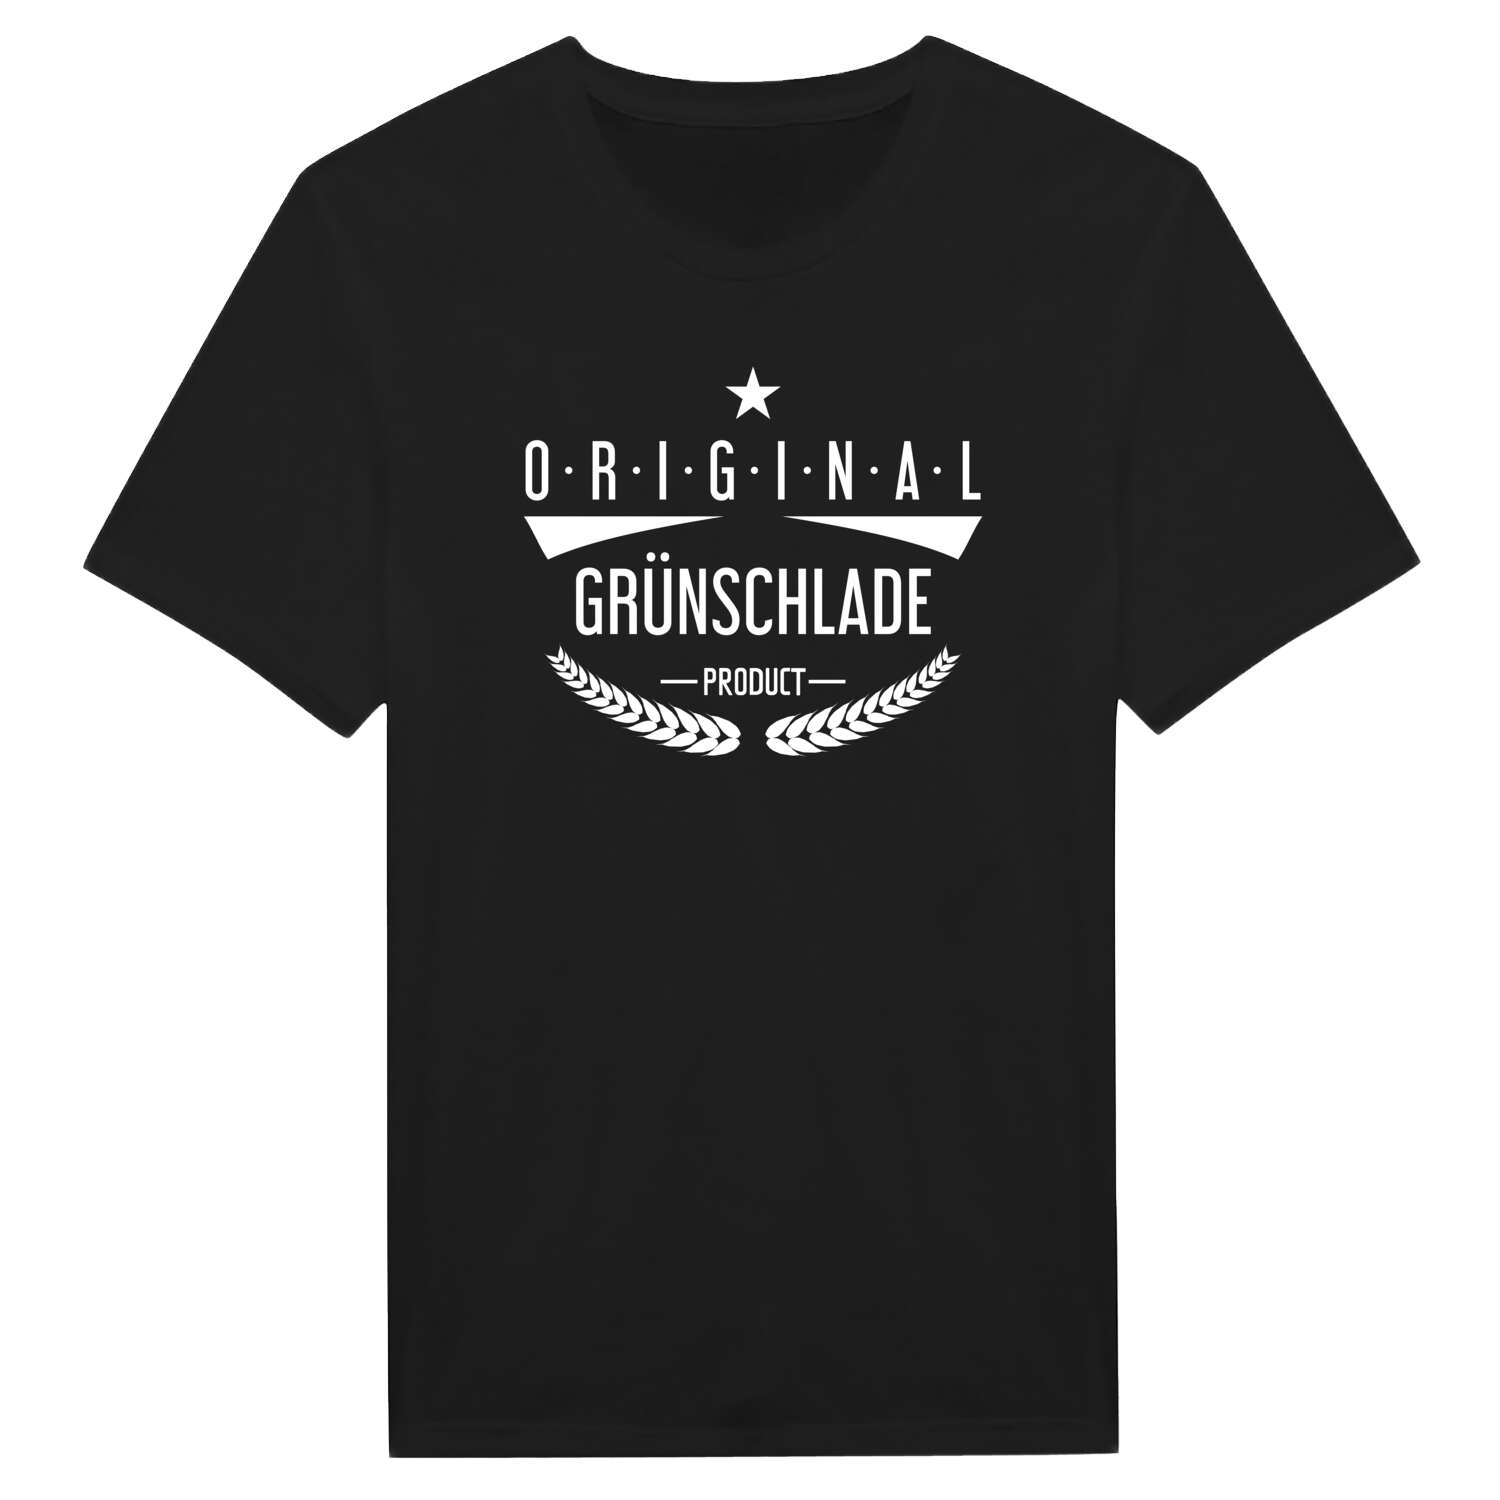 Grünschlade T-Shirt »Original Product«